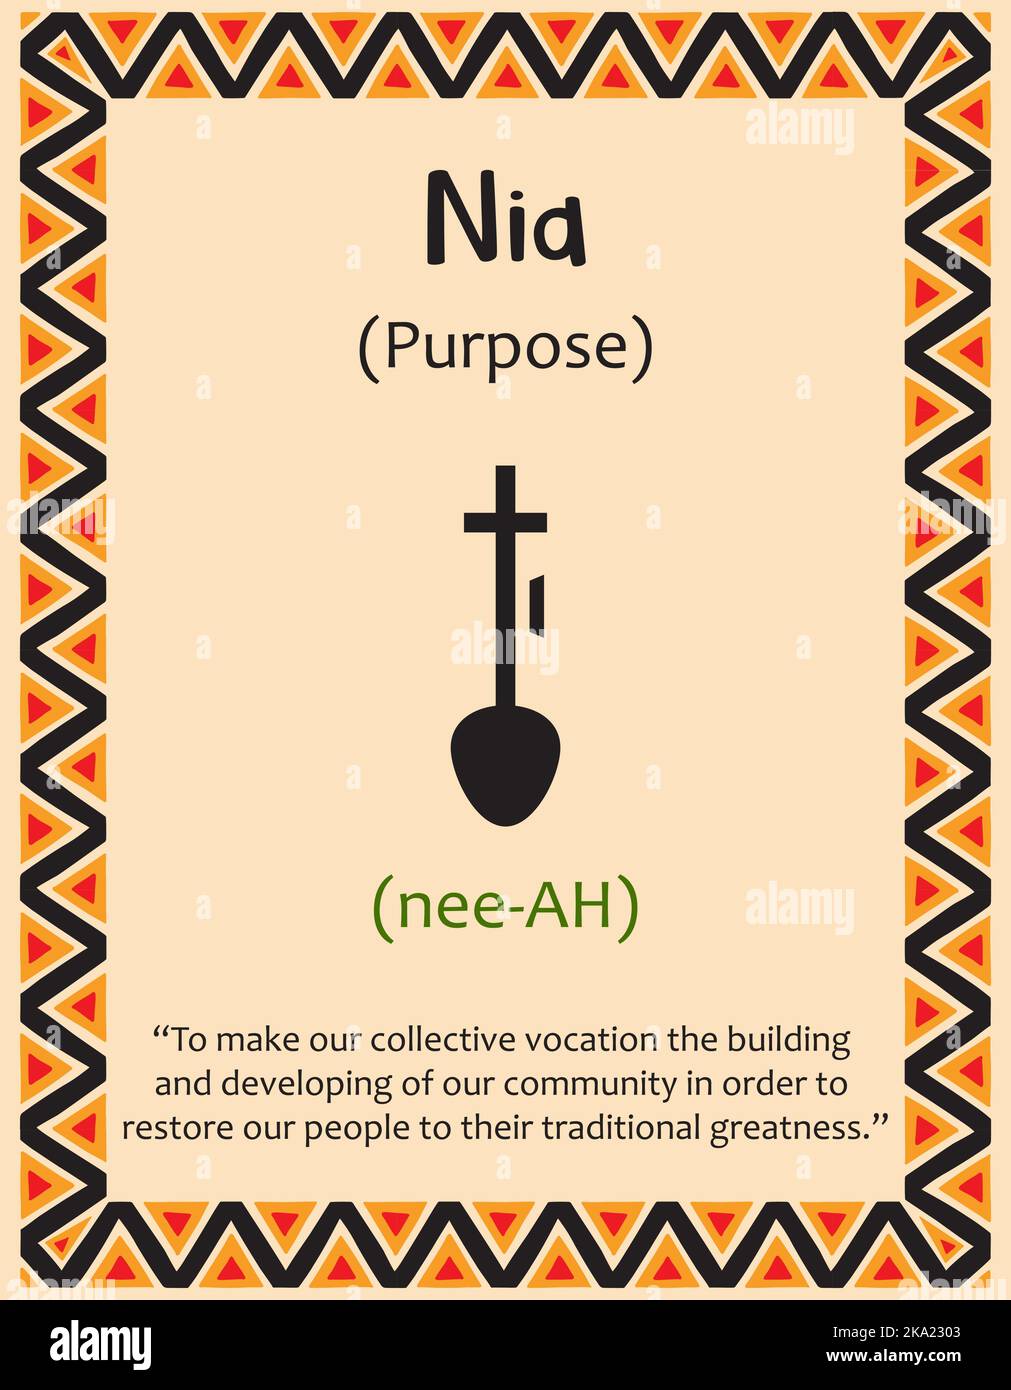 Une carte avec l'un des principes de Kwanzaa. Le symbole Nia signifie but en swahili. Affiche avec affiche et description. Modèle ethnique africain en traditiona Illustration de Vecteur